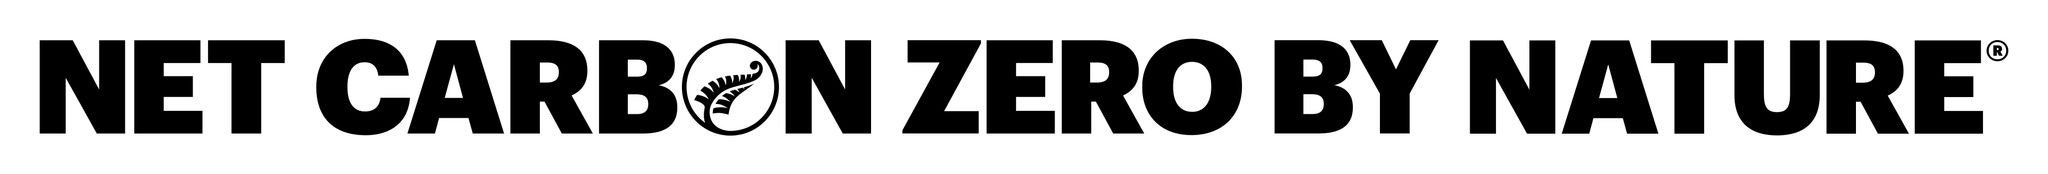 SILDA0055 Carbon Zero_Logo_Horizontal_AW_BK